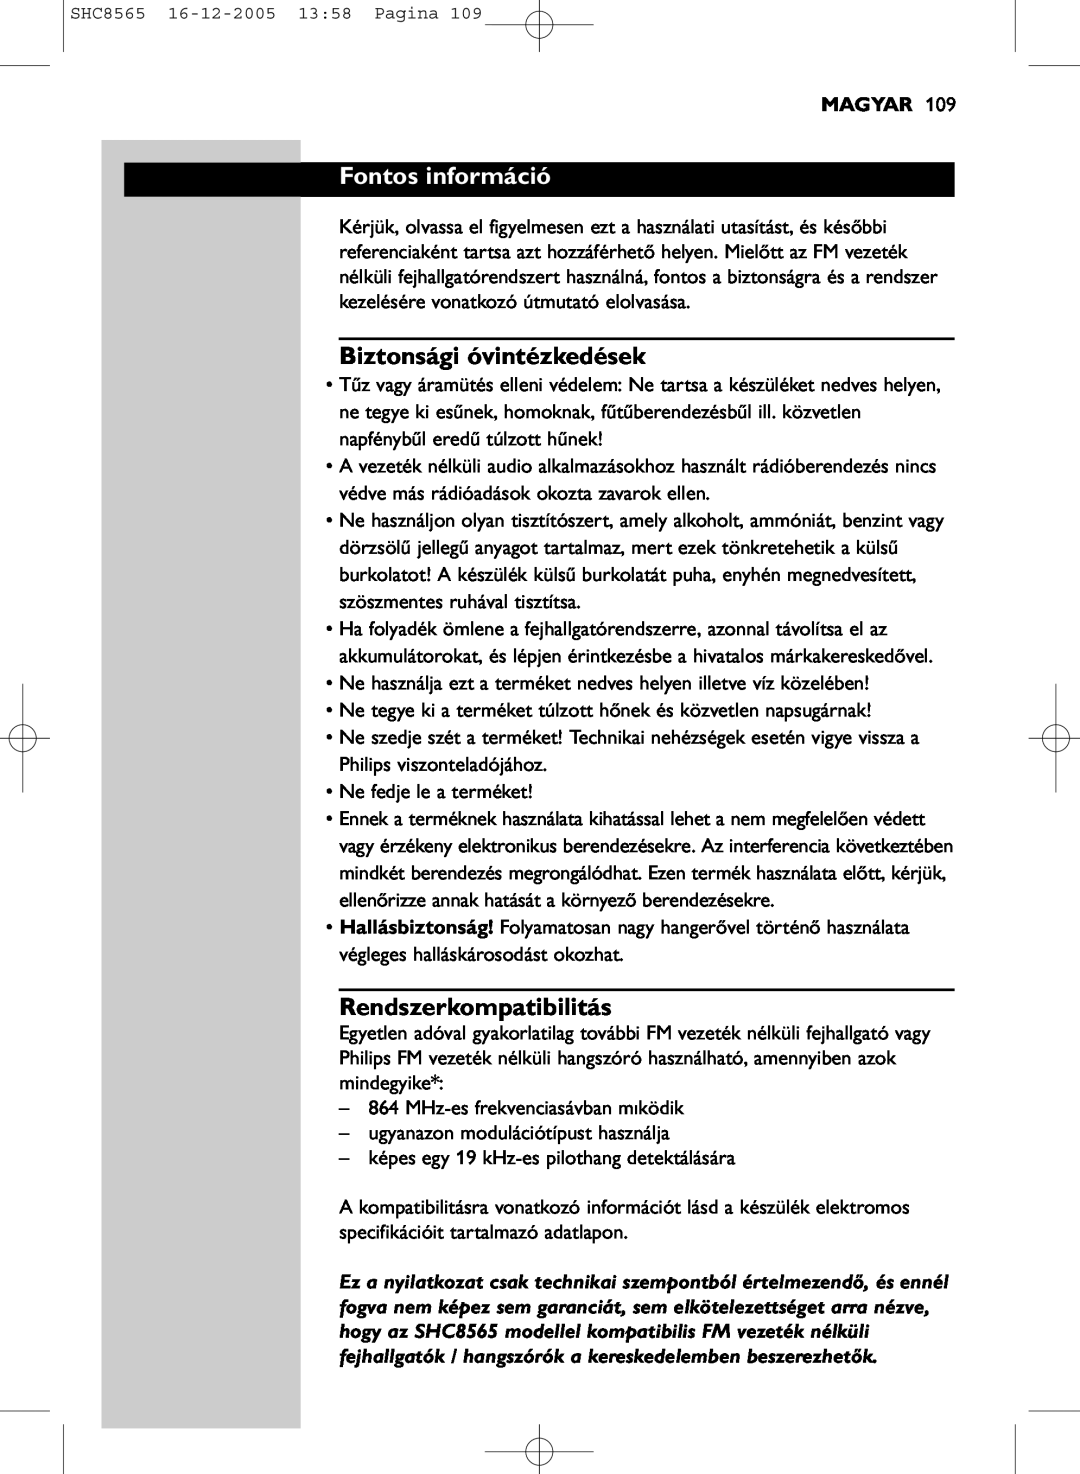 Philips SHC8565 manual Fontos információ, Biztonsági óvintézkedések, Rendszerkompatibilitás, Magyar 